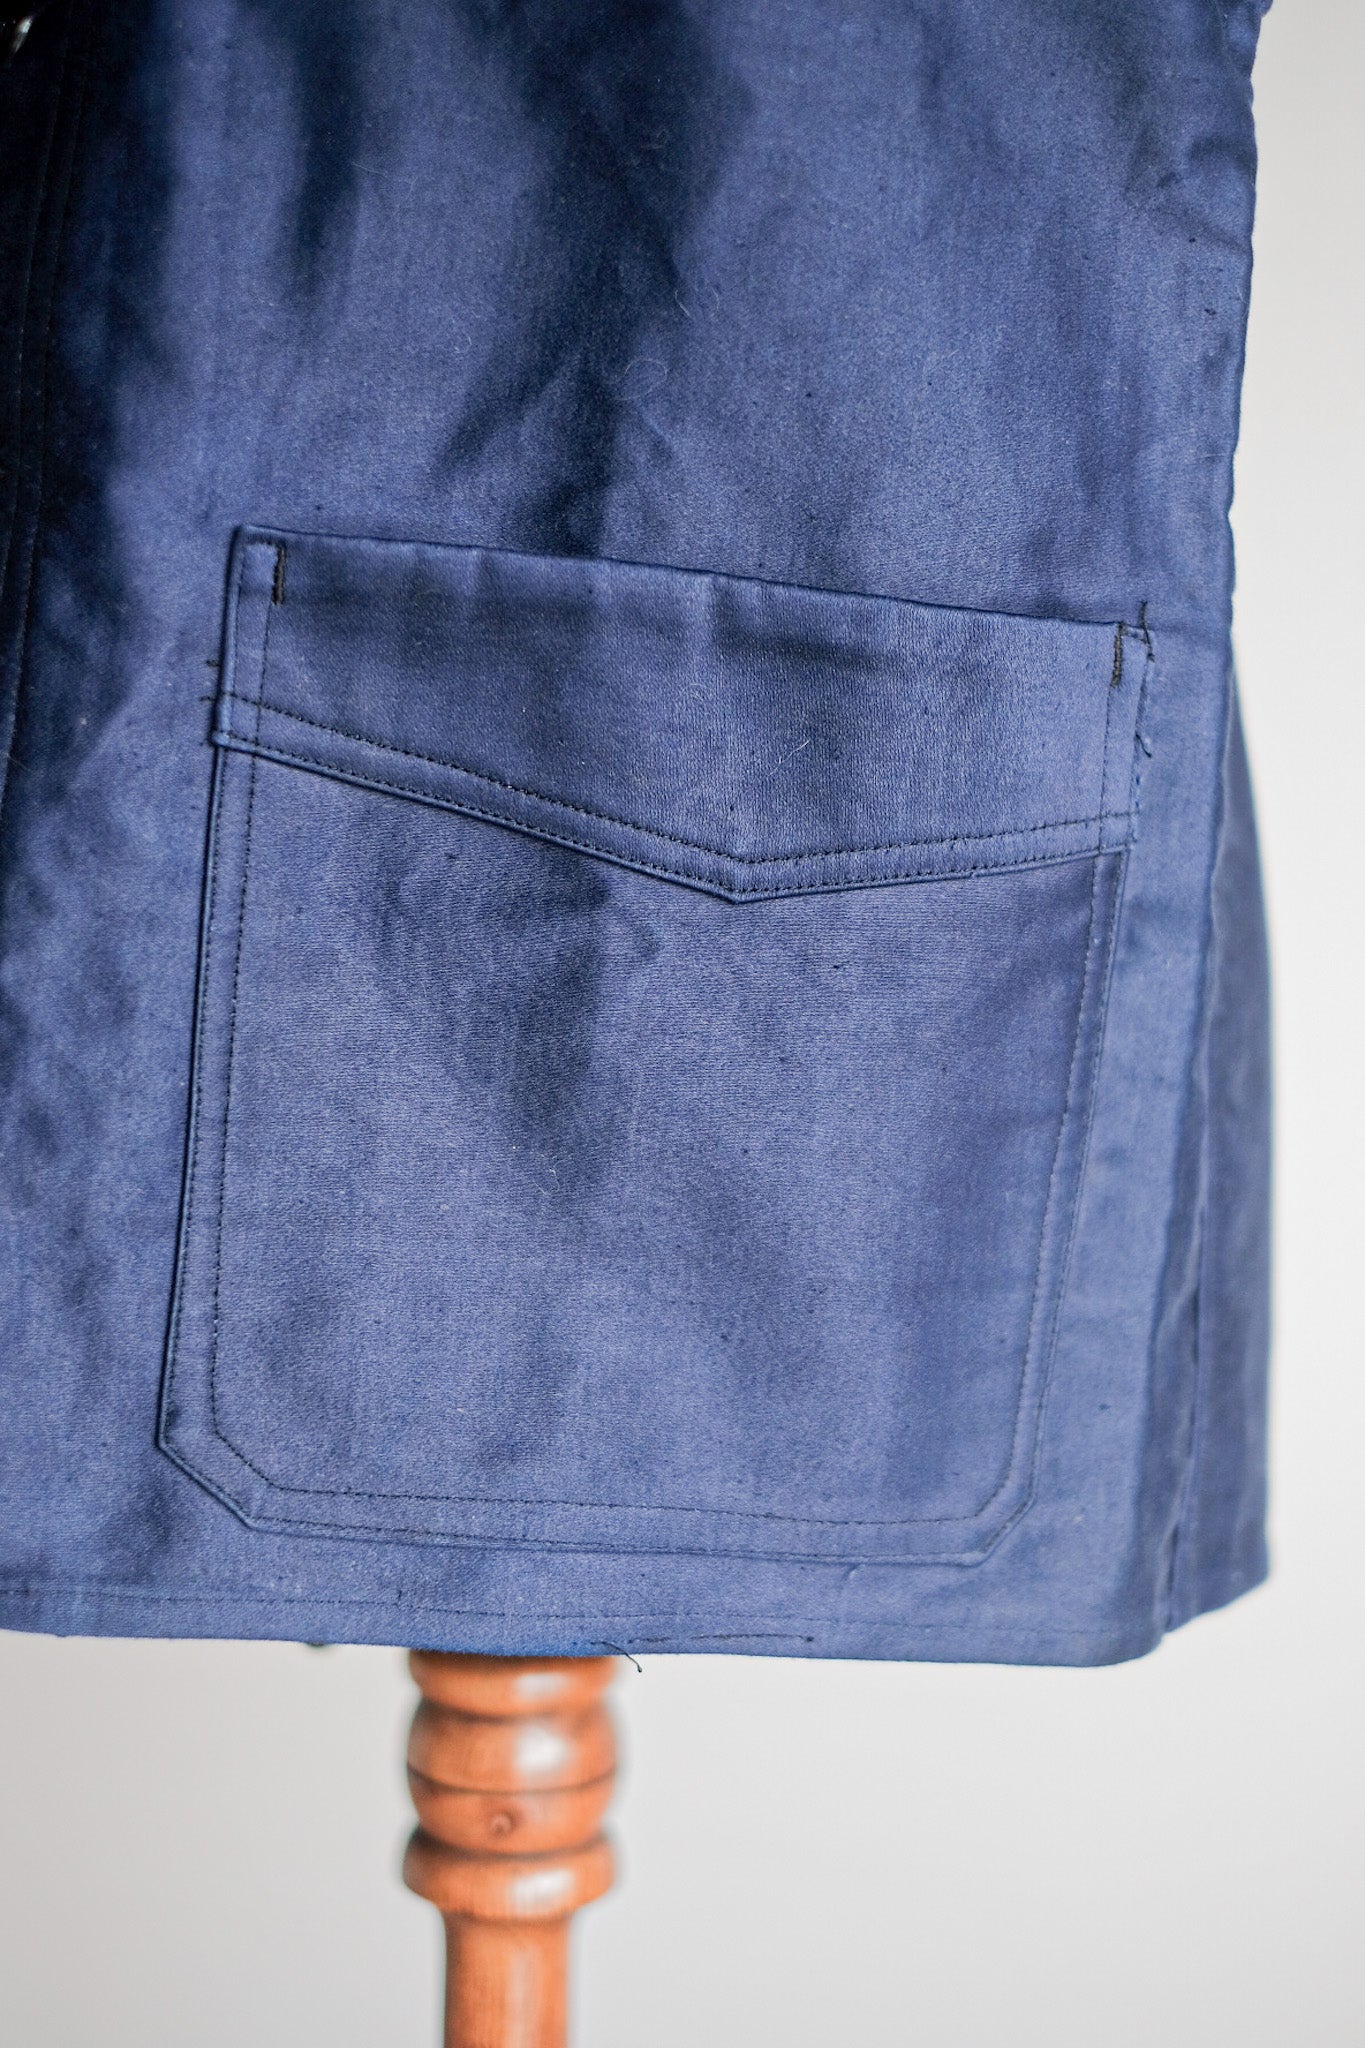 [〜40年代]法國復古藍色摩爾斯金鞋夾克“ Le Mont Stock”“ Dead Stock”